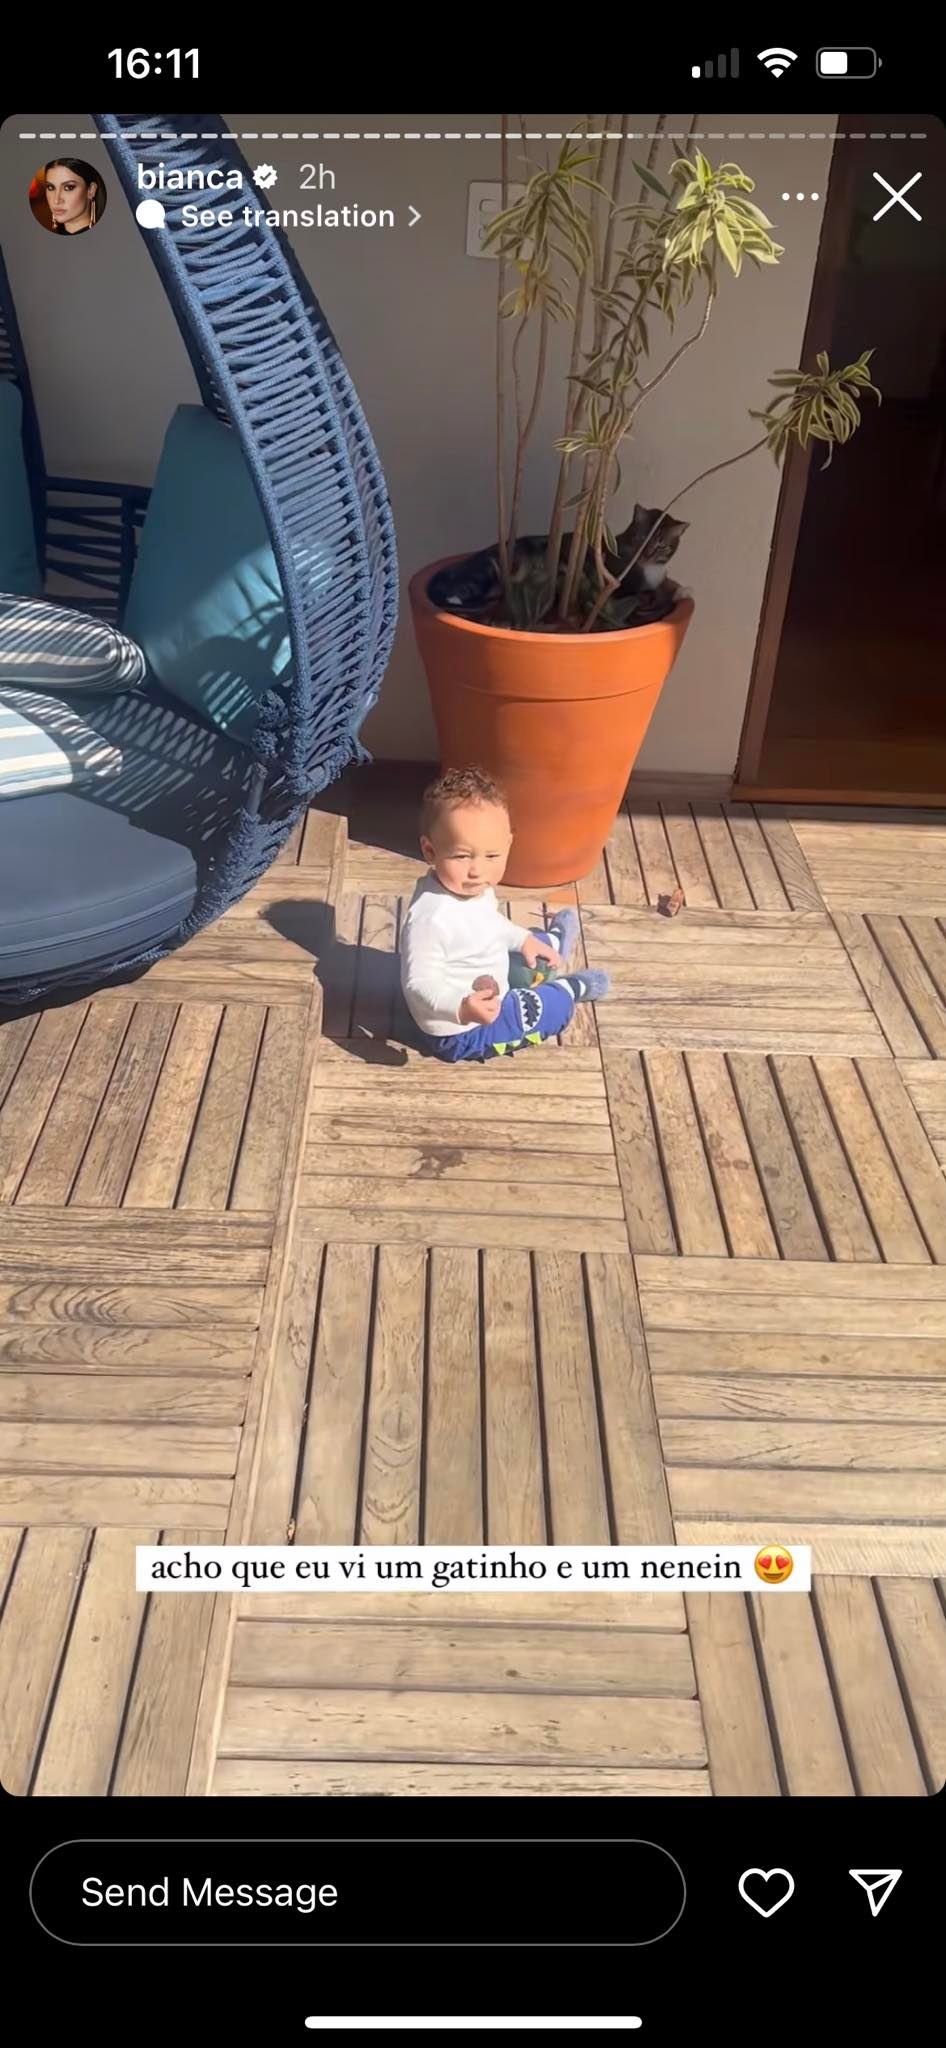 Bianca Andrade posta vídeos de momento descontraído com o filho